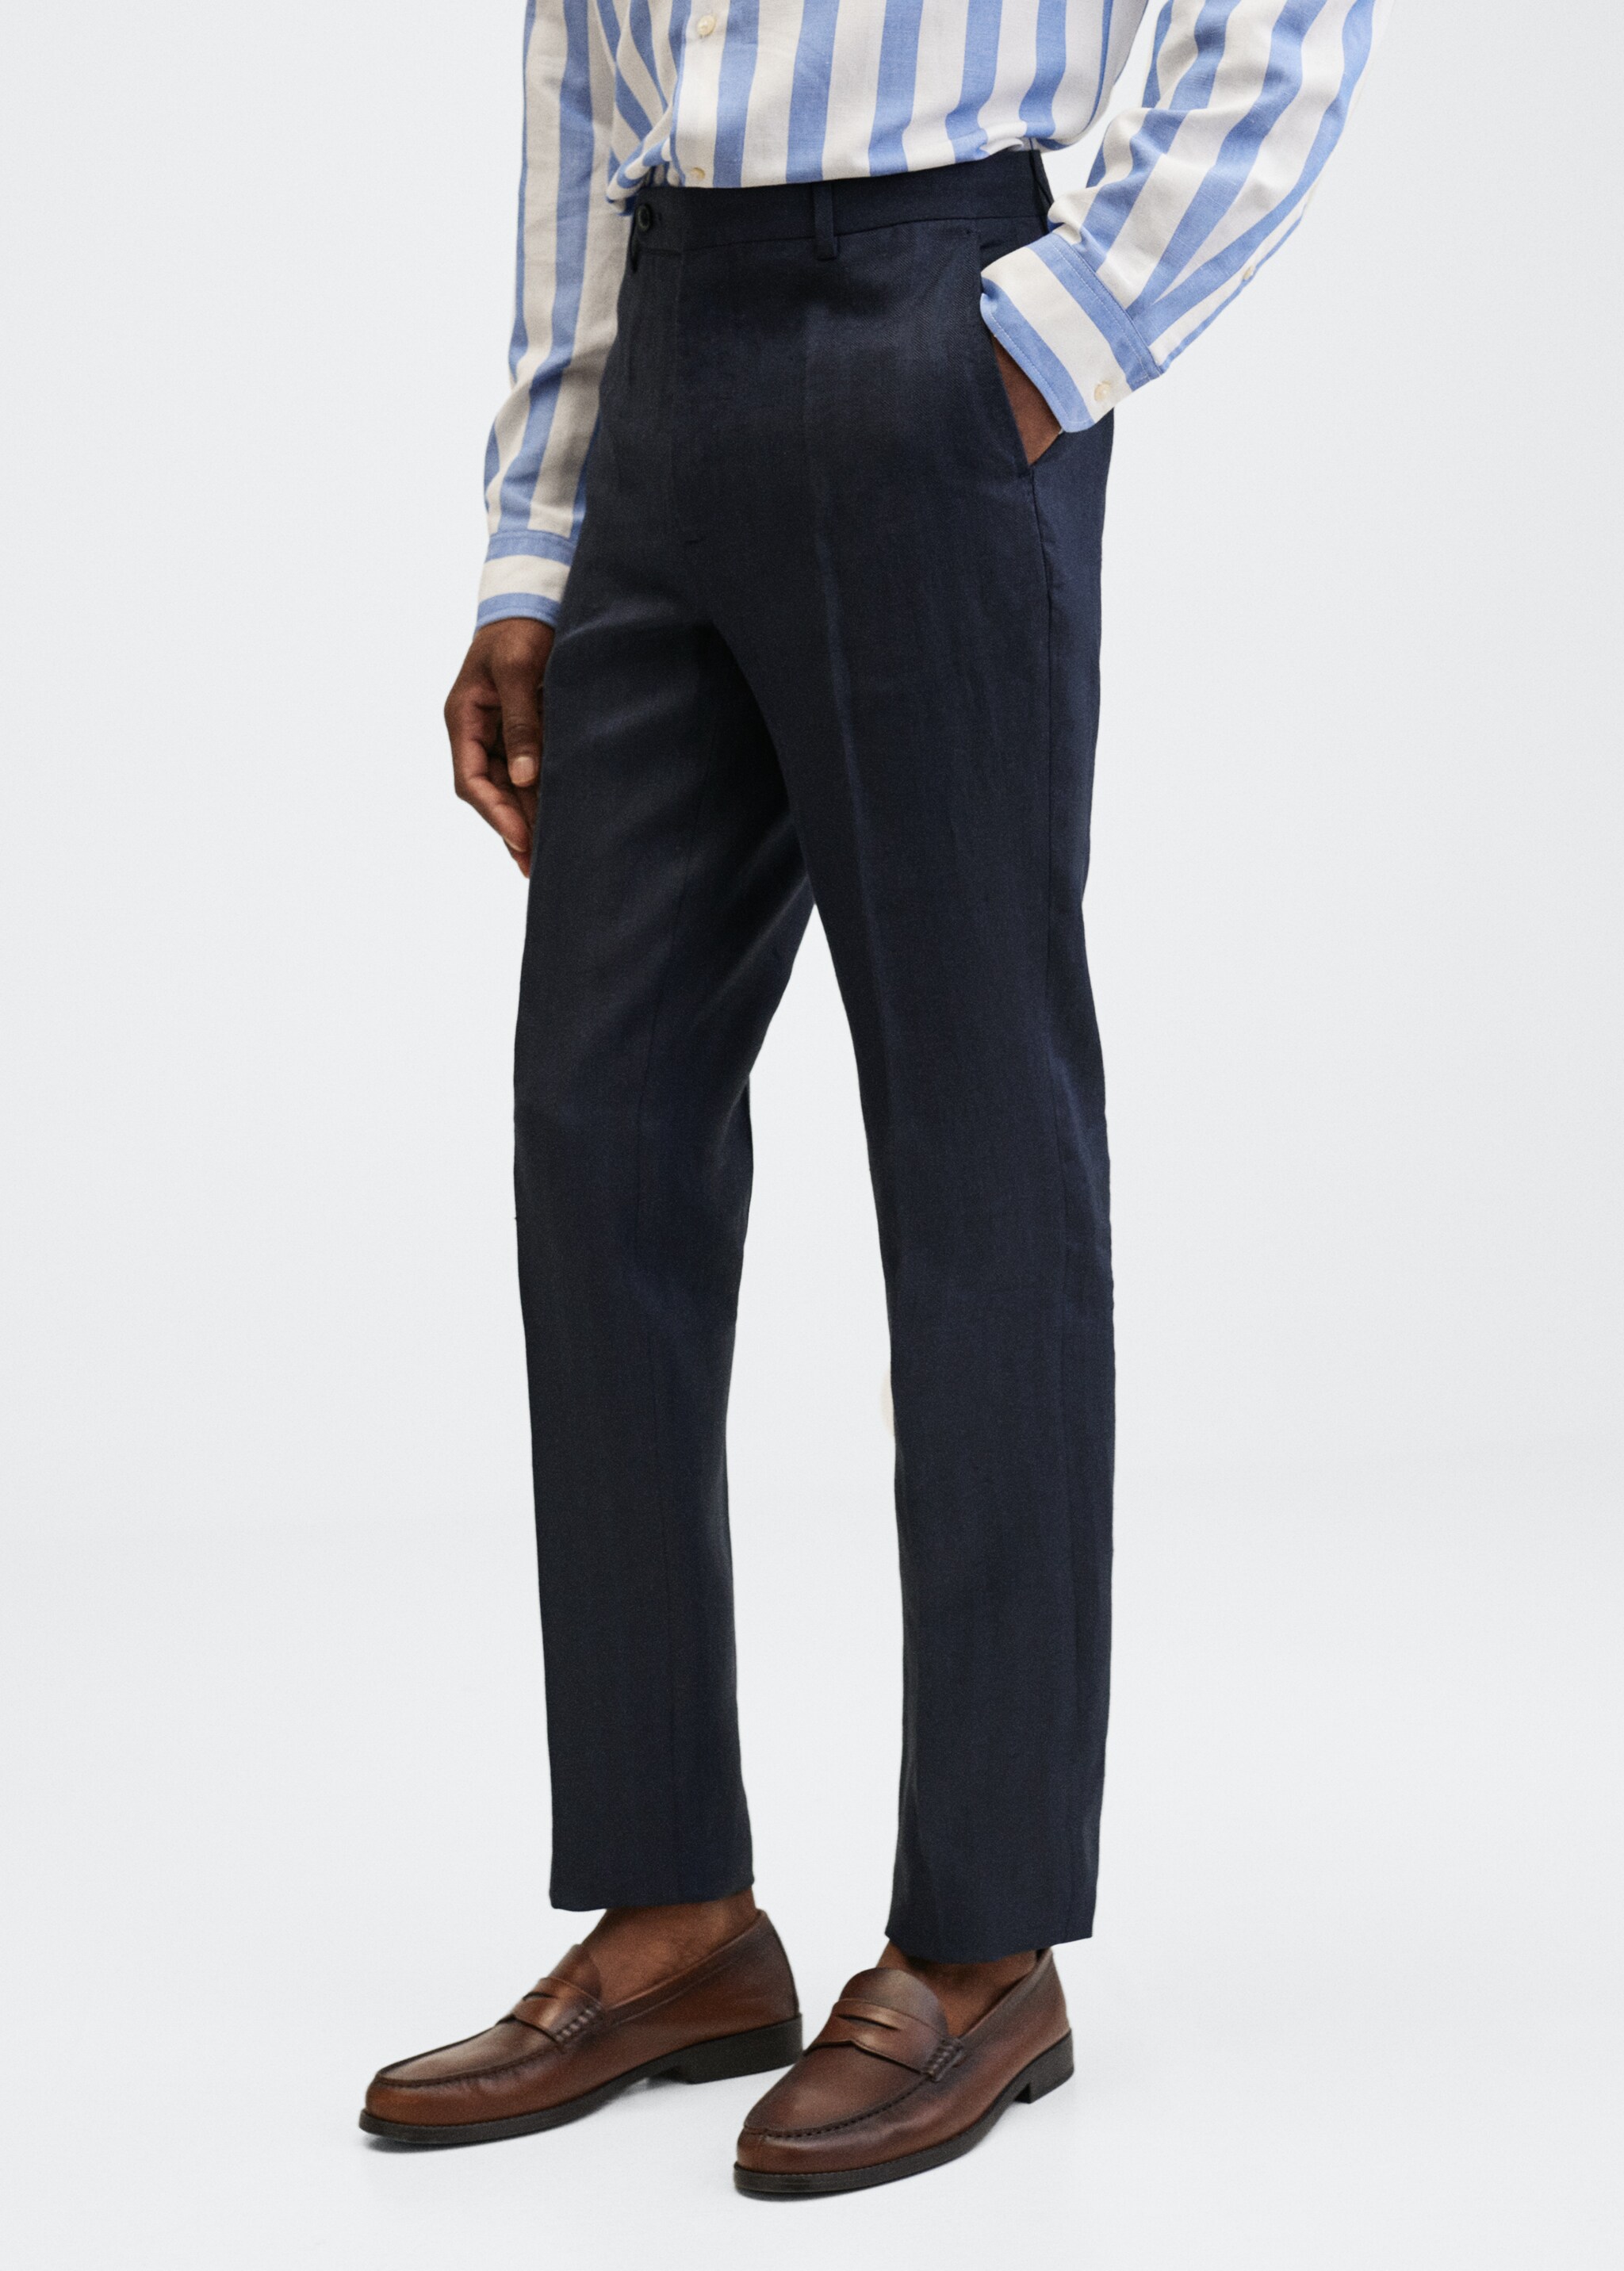  Linen suit trousers - Medium plane